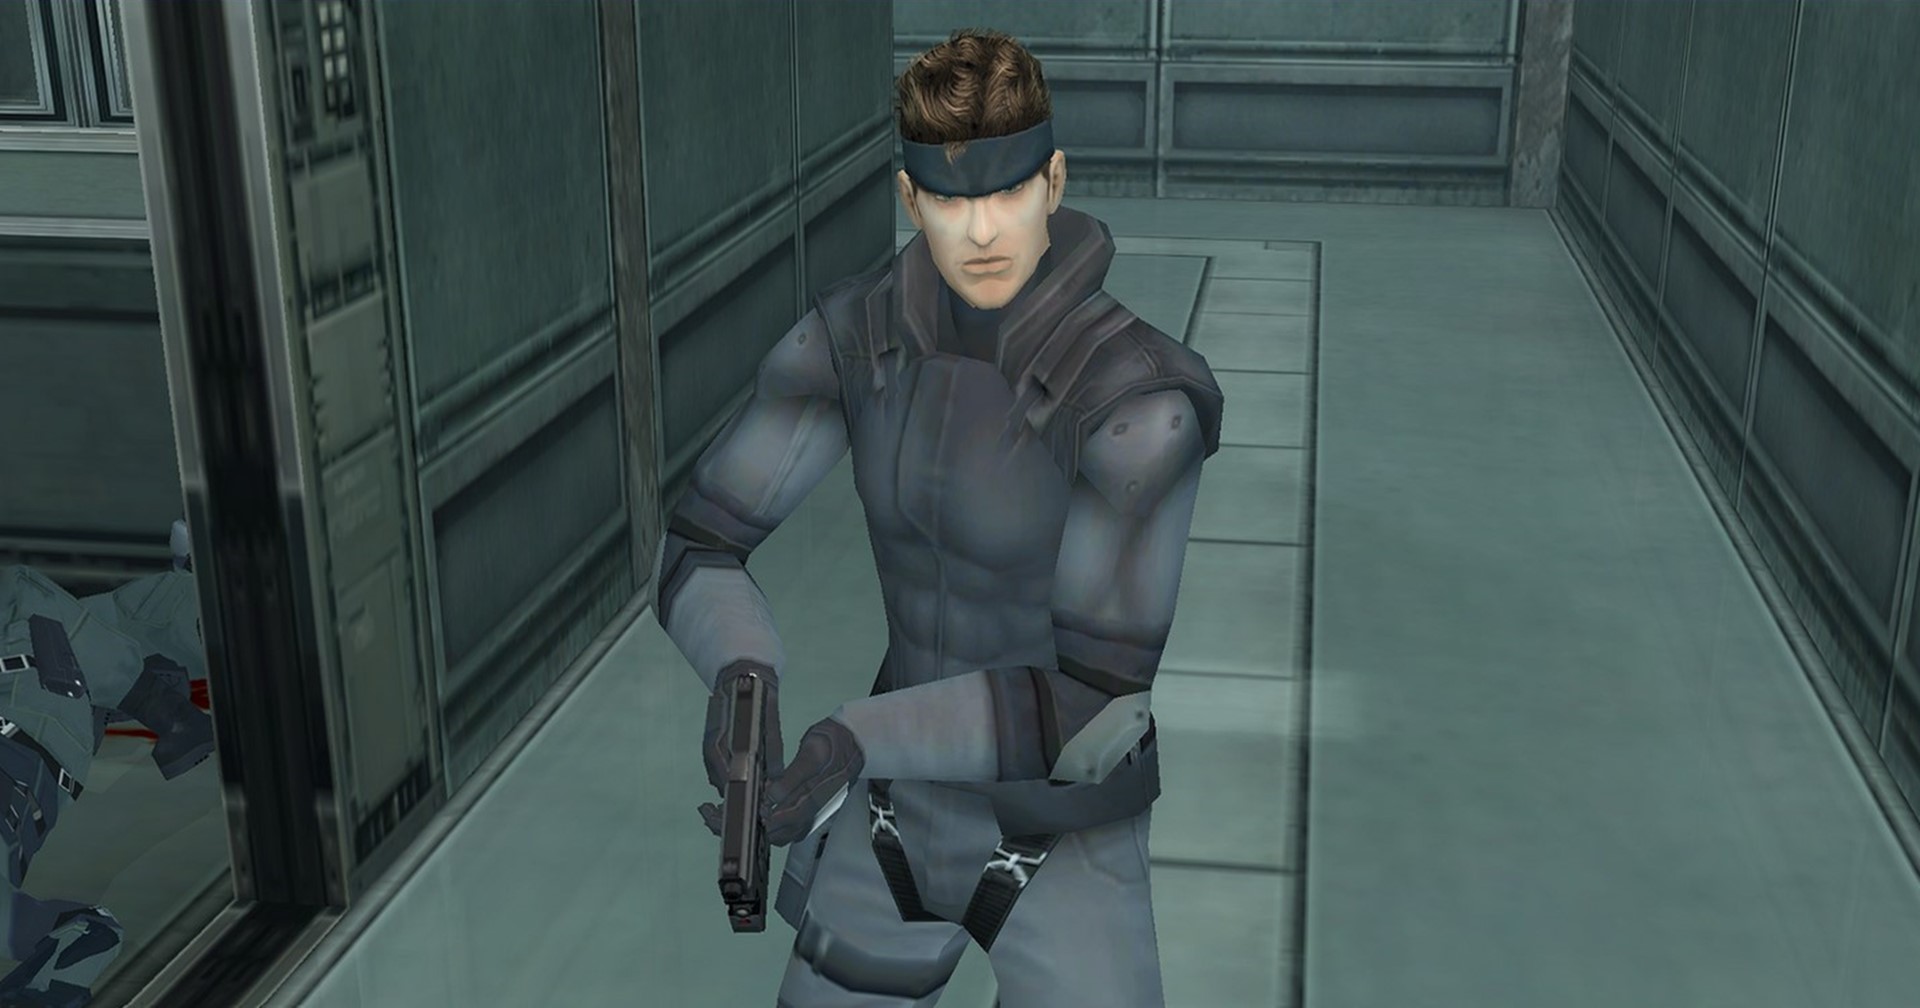 ข่าวลือ เกม Metal Gear Solid รีเมก จะเปิดตัวในปี 2023